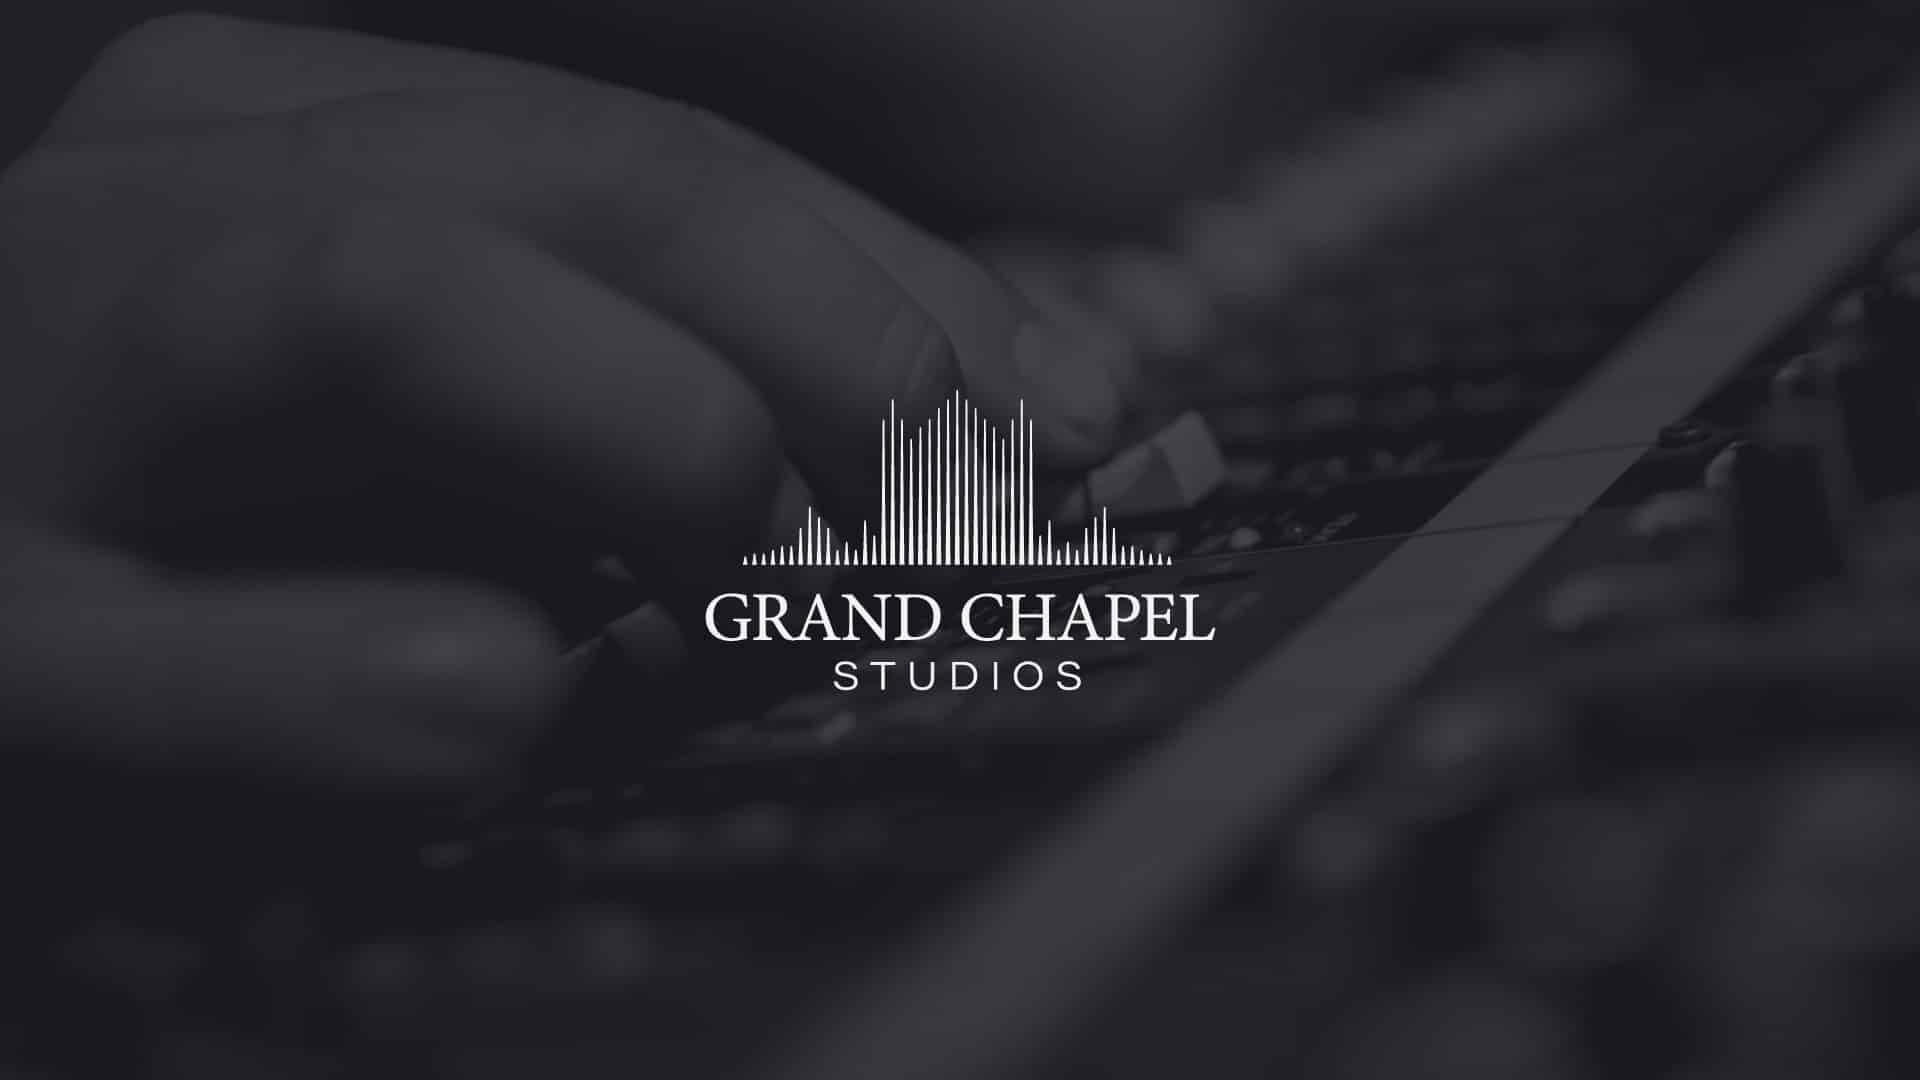 Grand Chapel Studios